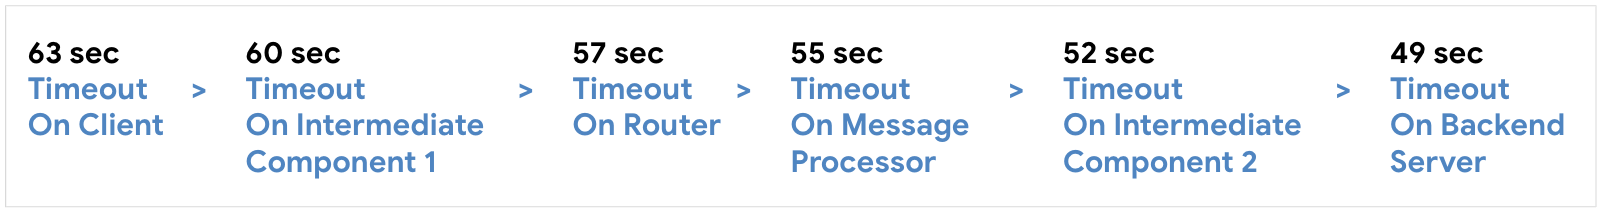 Configurez le délai avant expiration sur le client à 63 secondes, puis le composant intermédiaire 1 à 60 secondes, le routeur à 57 secondes, le processeur de messages jusqu&#39;à 55 secondes, le composant intermédiaire 2 à 52 secondes, puis le serveur backend à 59 secondes.